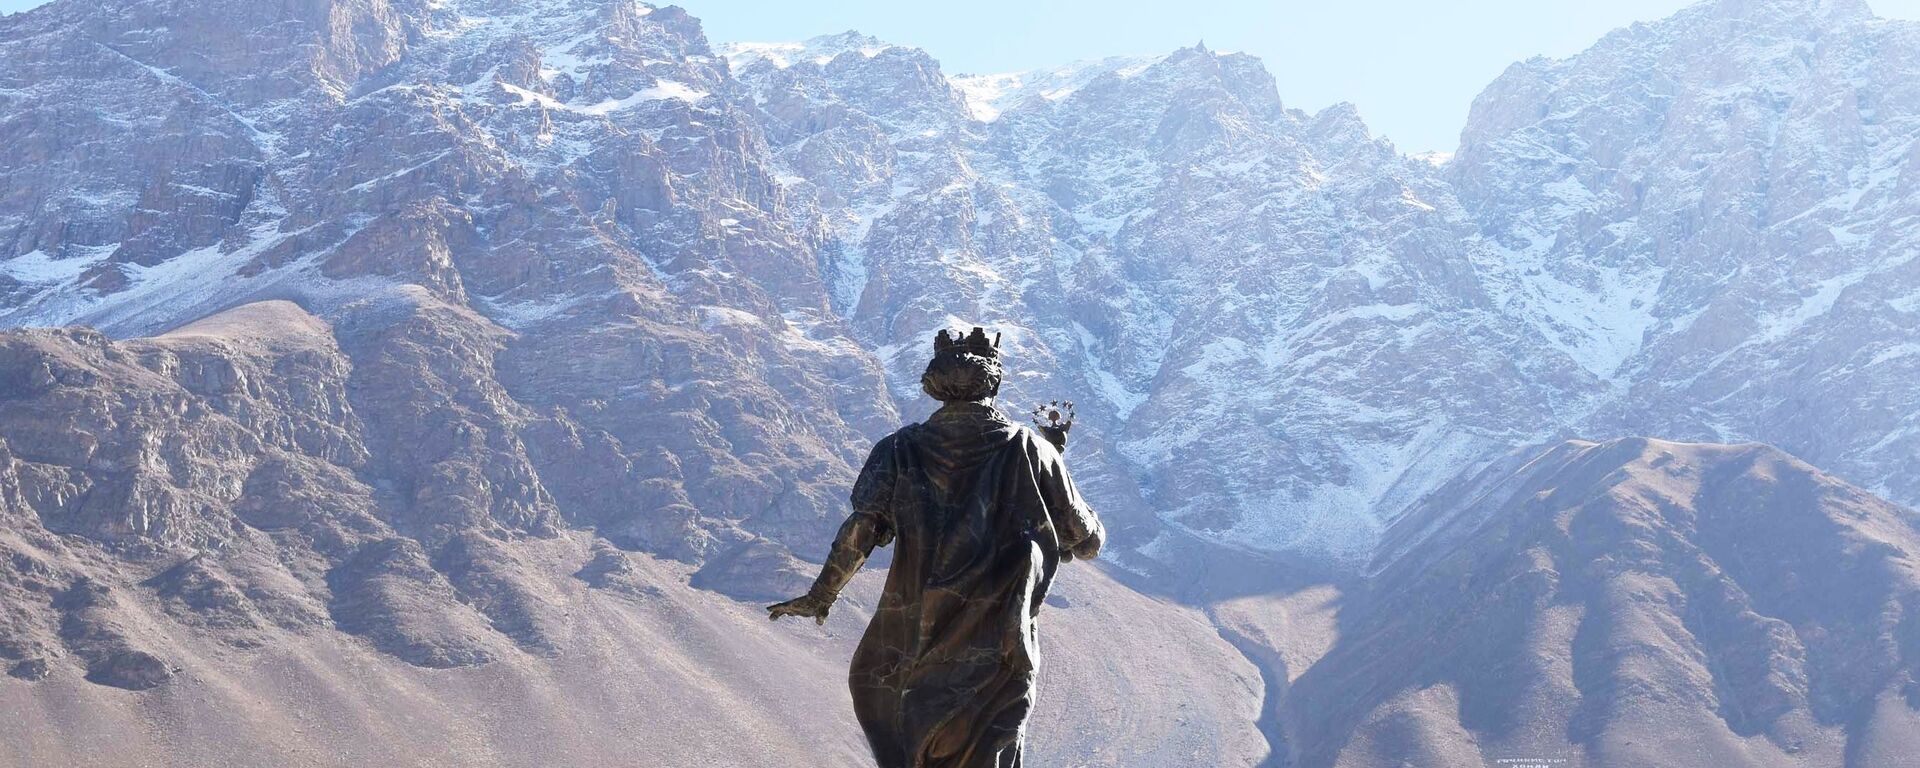 Памятник Исмаилу Самани в городе Хорог. - Sputnik Таджикистан, 1920, 29.11.2021